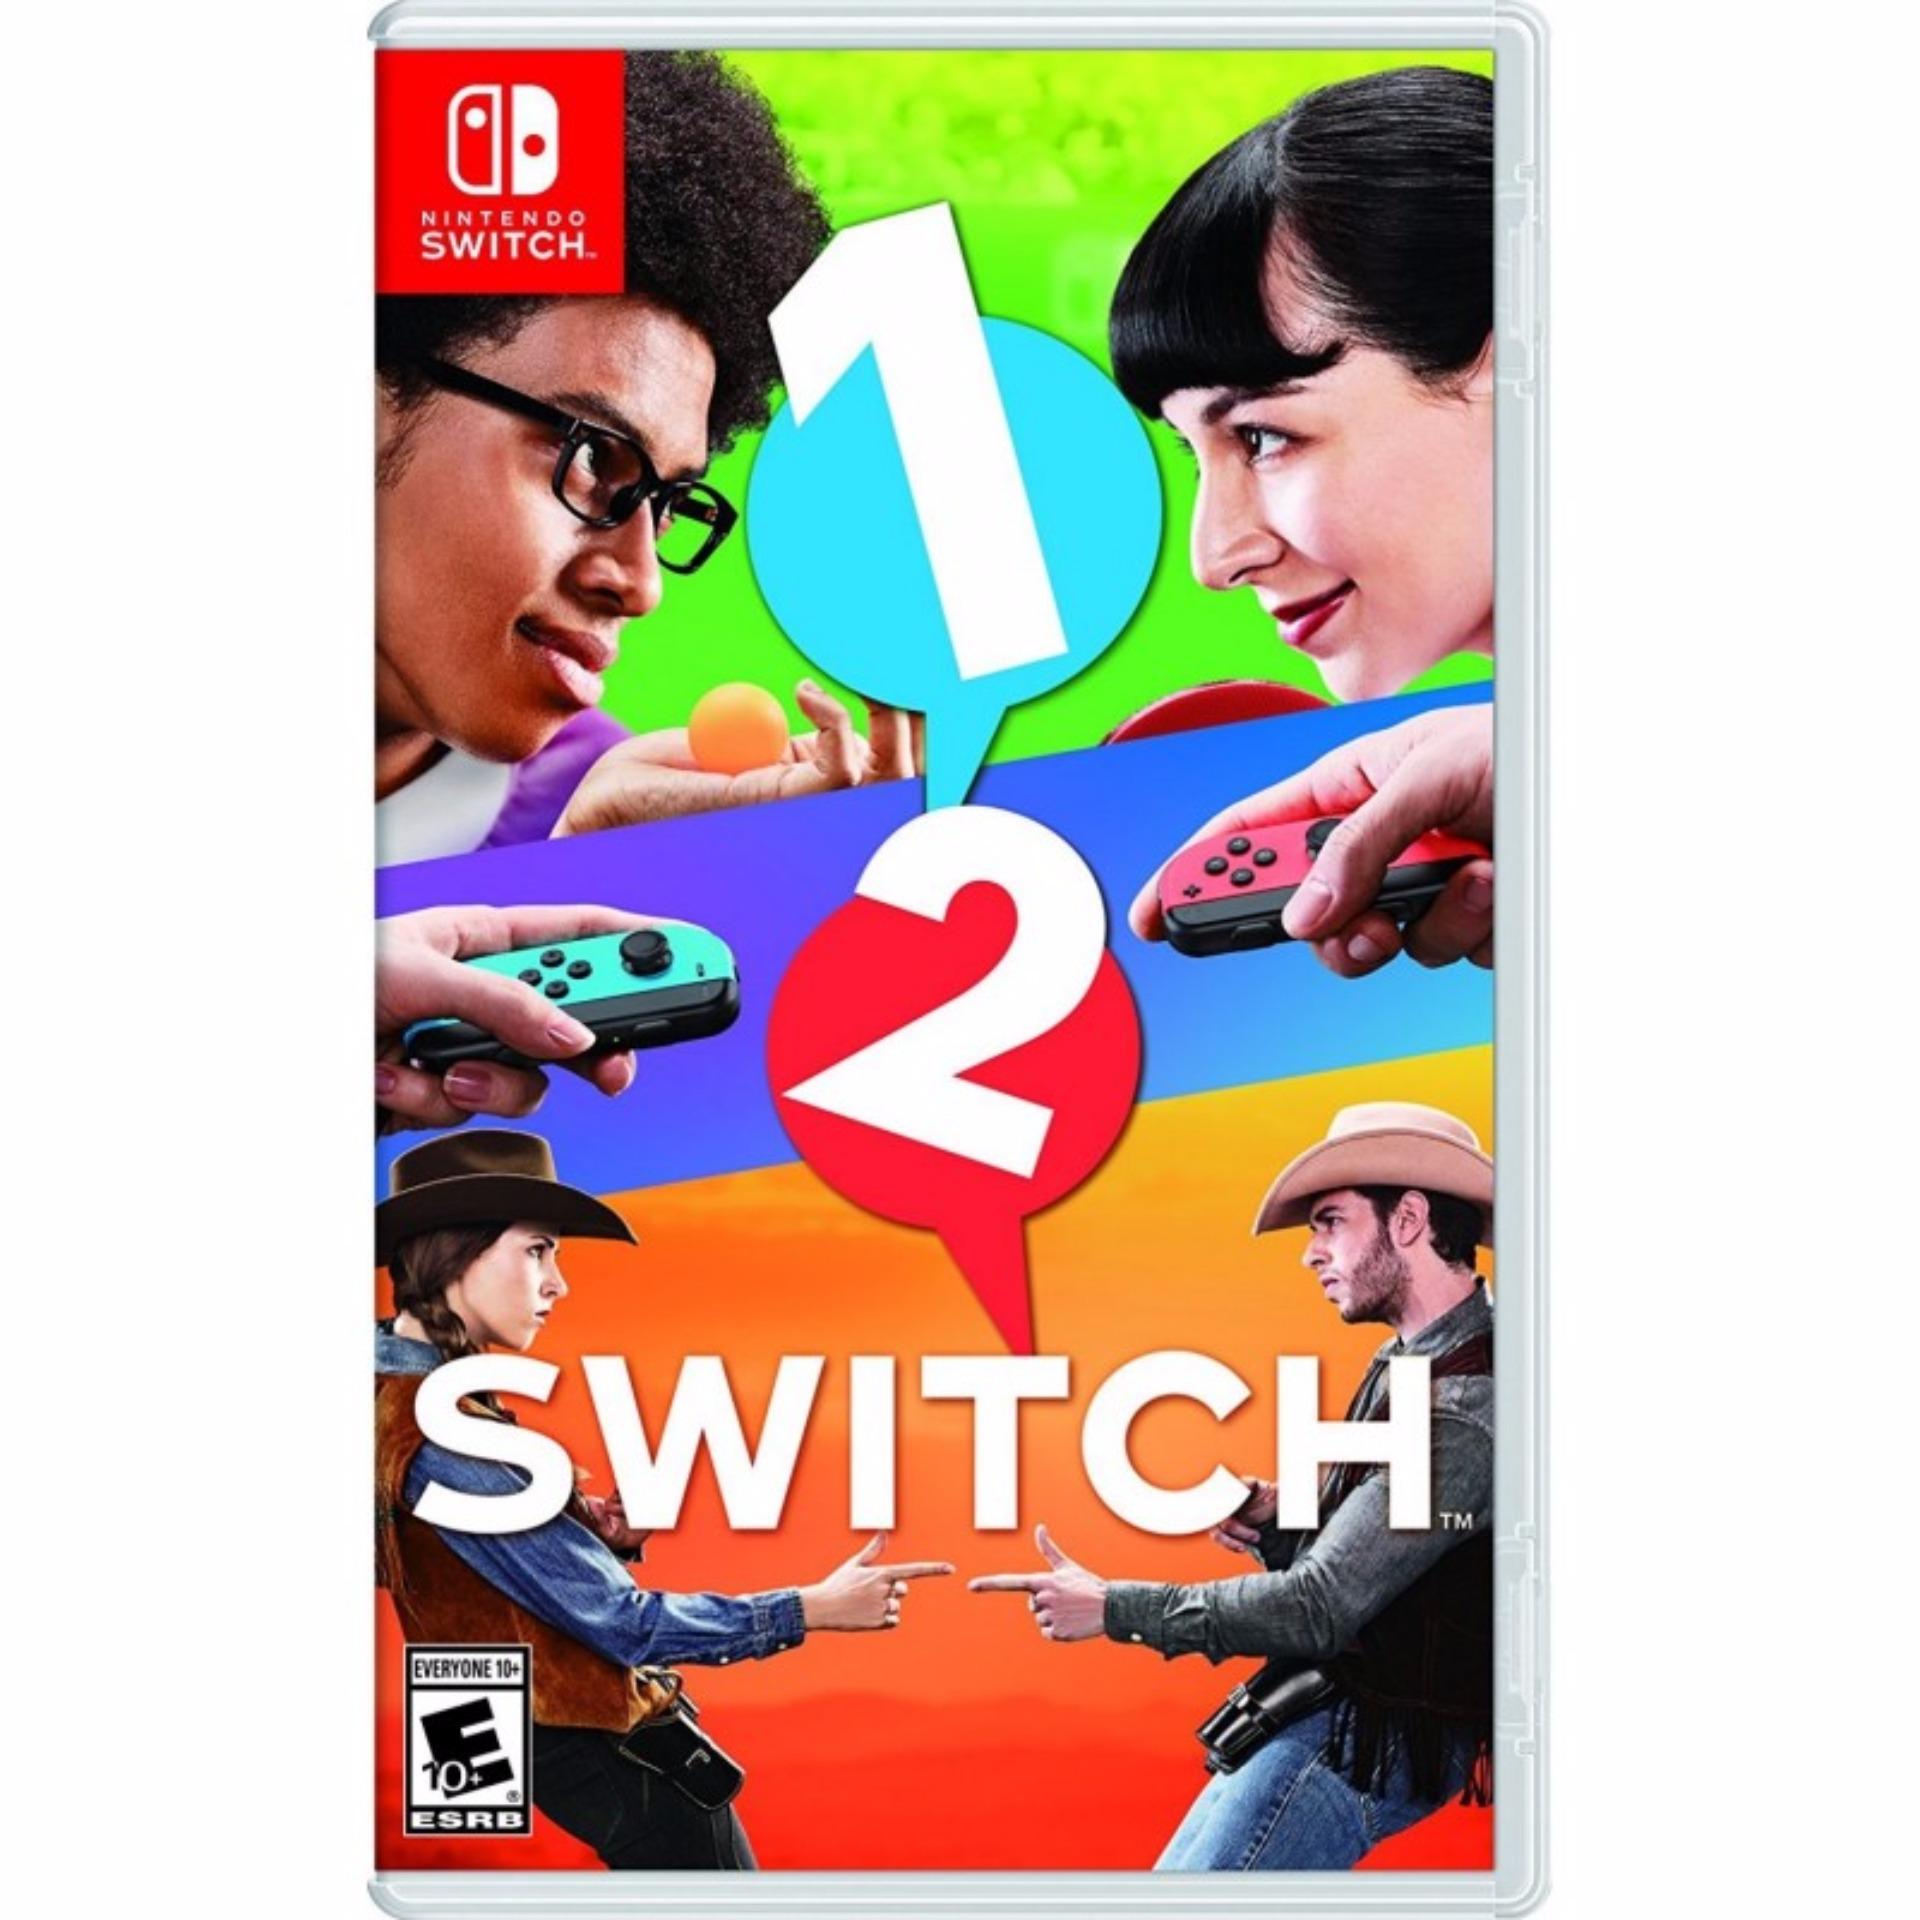 Đĩa game Nintendo Switch: 1, 2, Switch